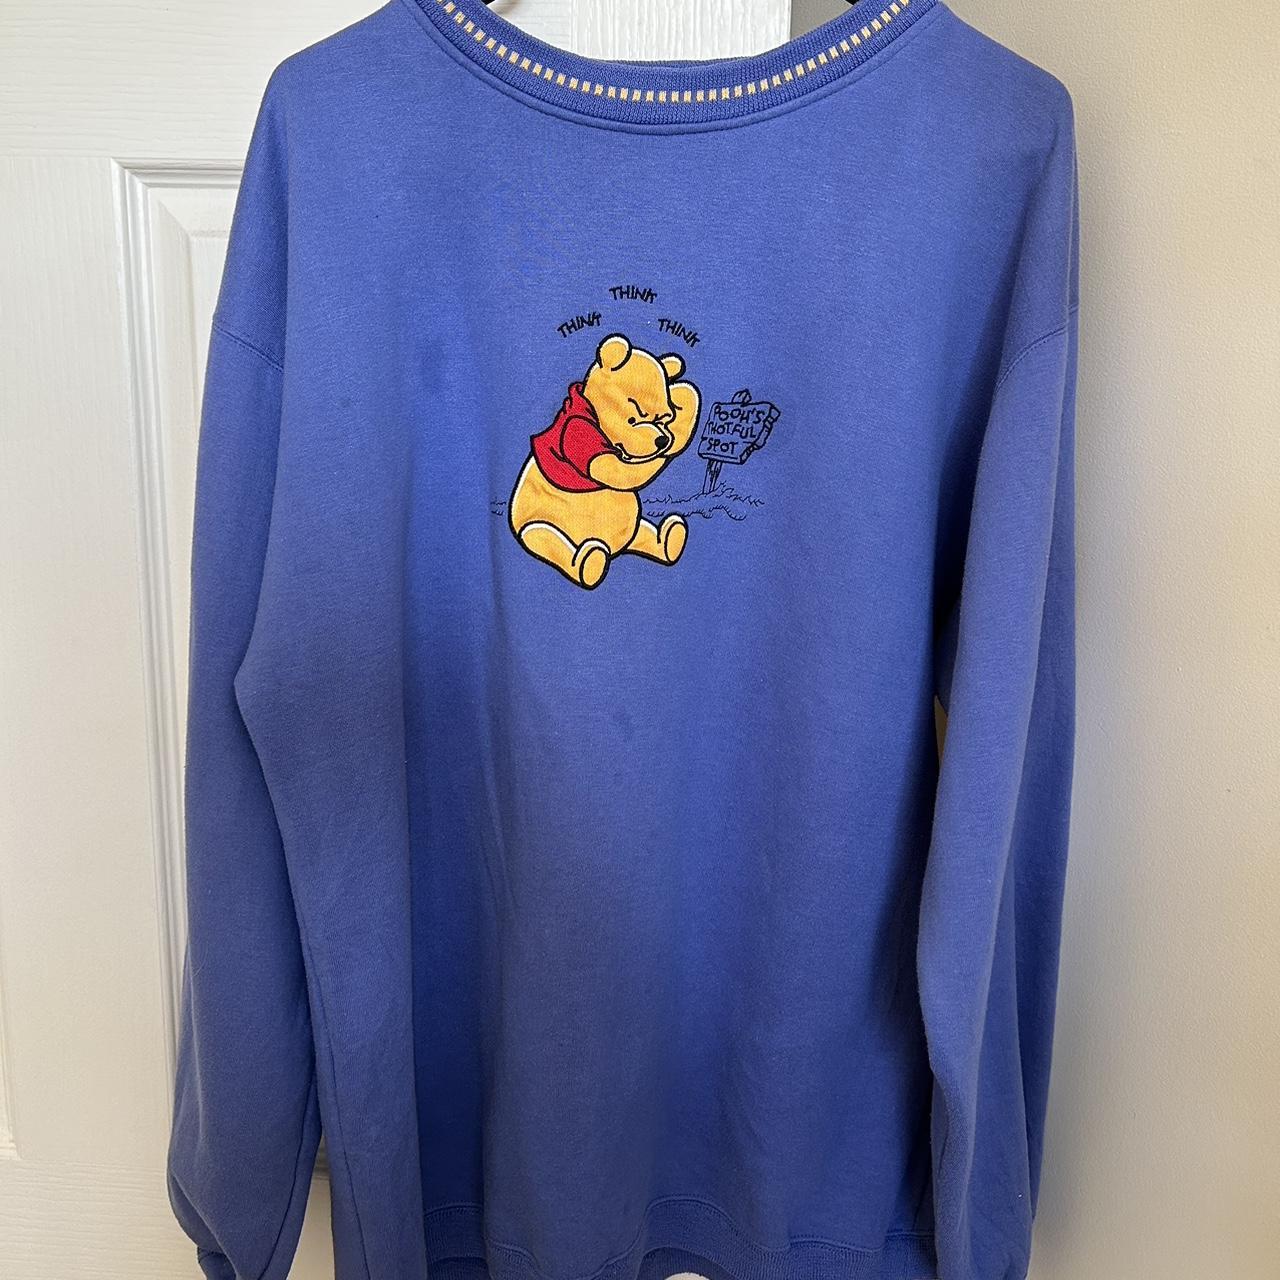 Vintage Winnie the Pooh jumper - Depop